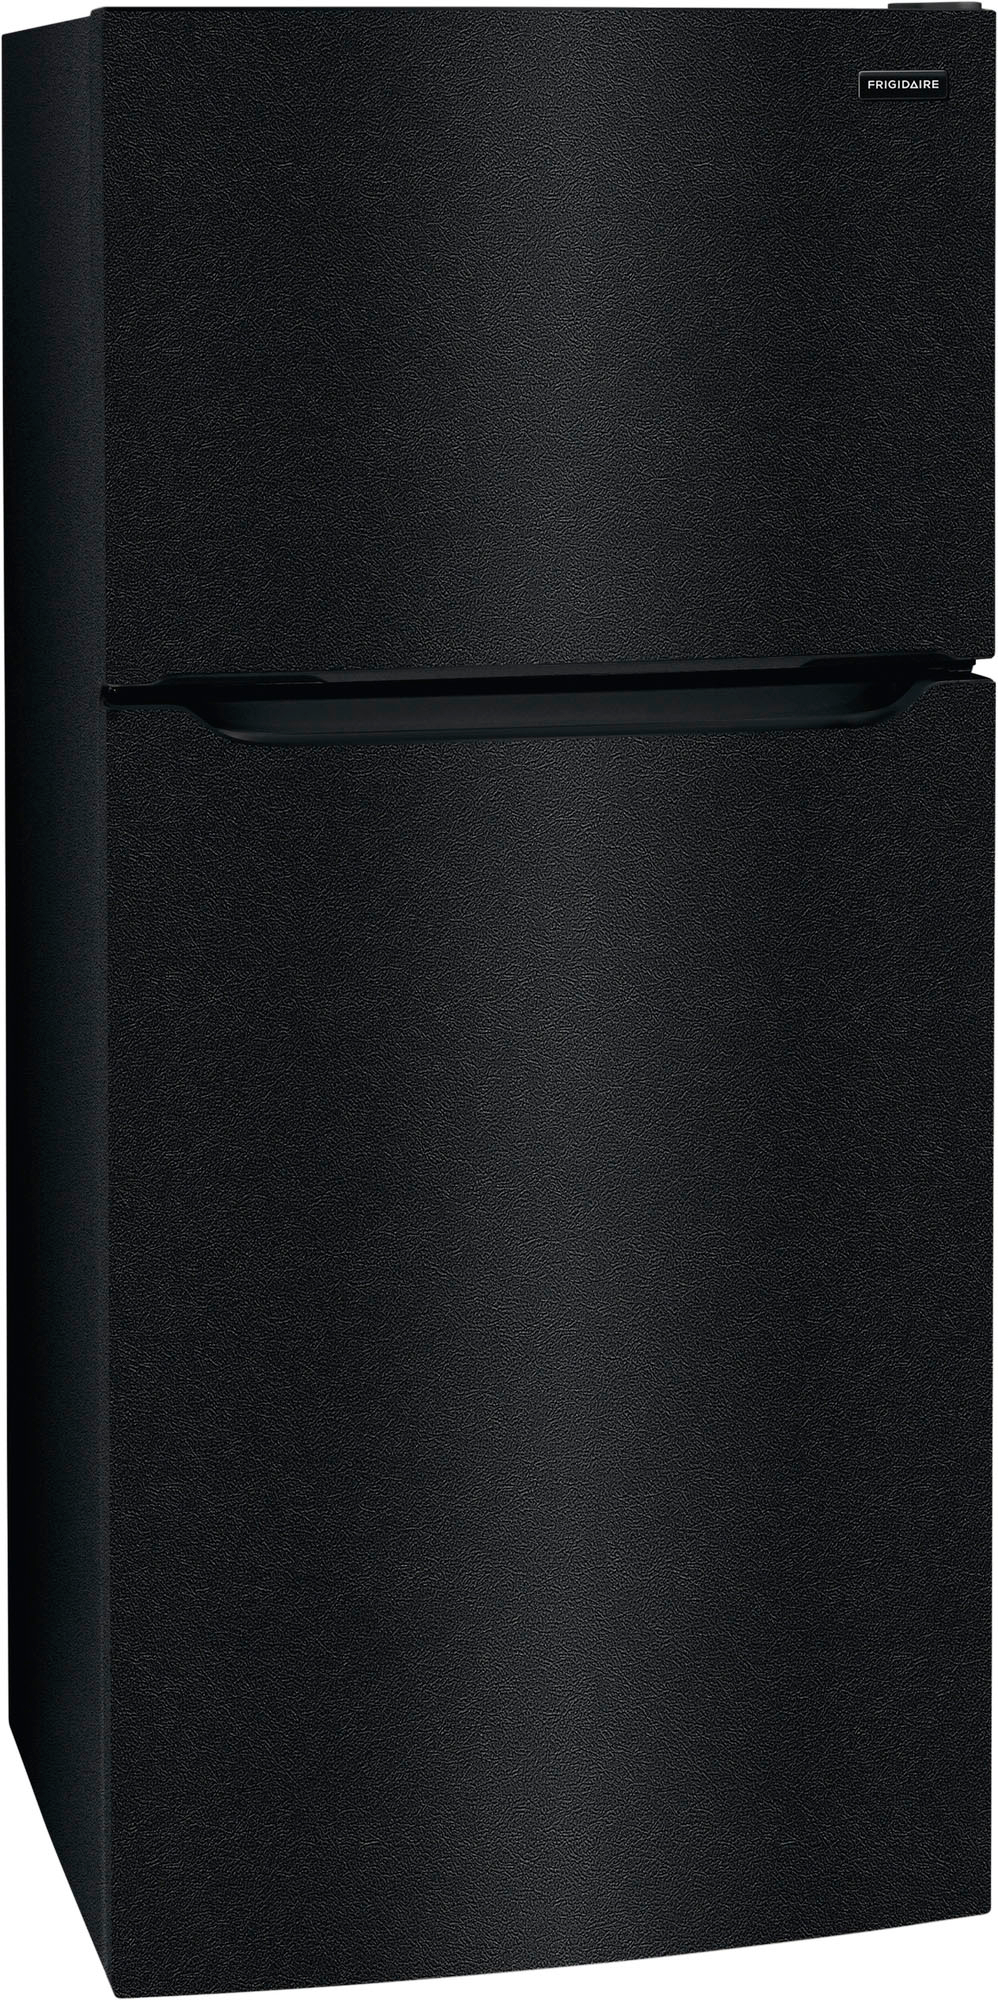 Frigidaire 18.3 Cu. Ft. Top Freezer Refrigerator Black FFHT1814WB ...